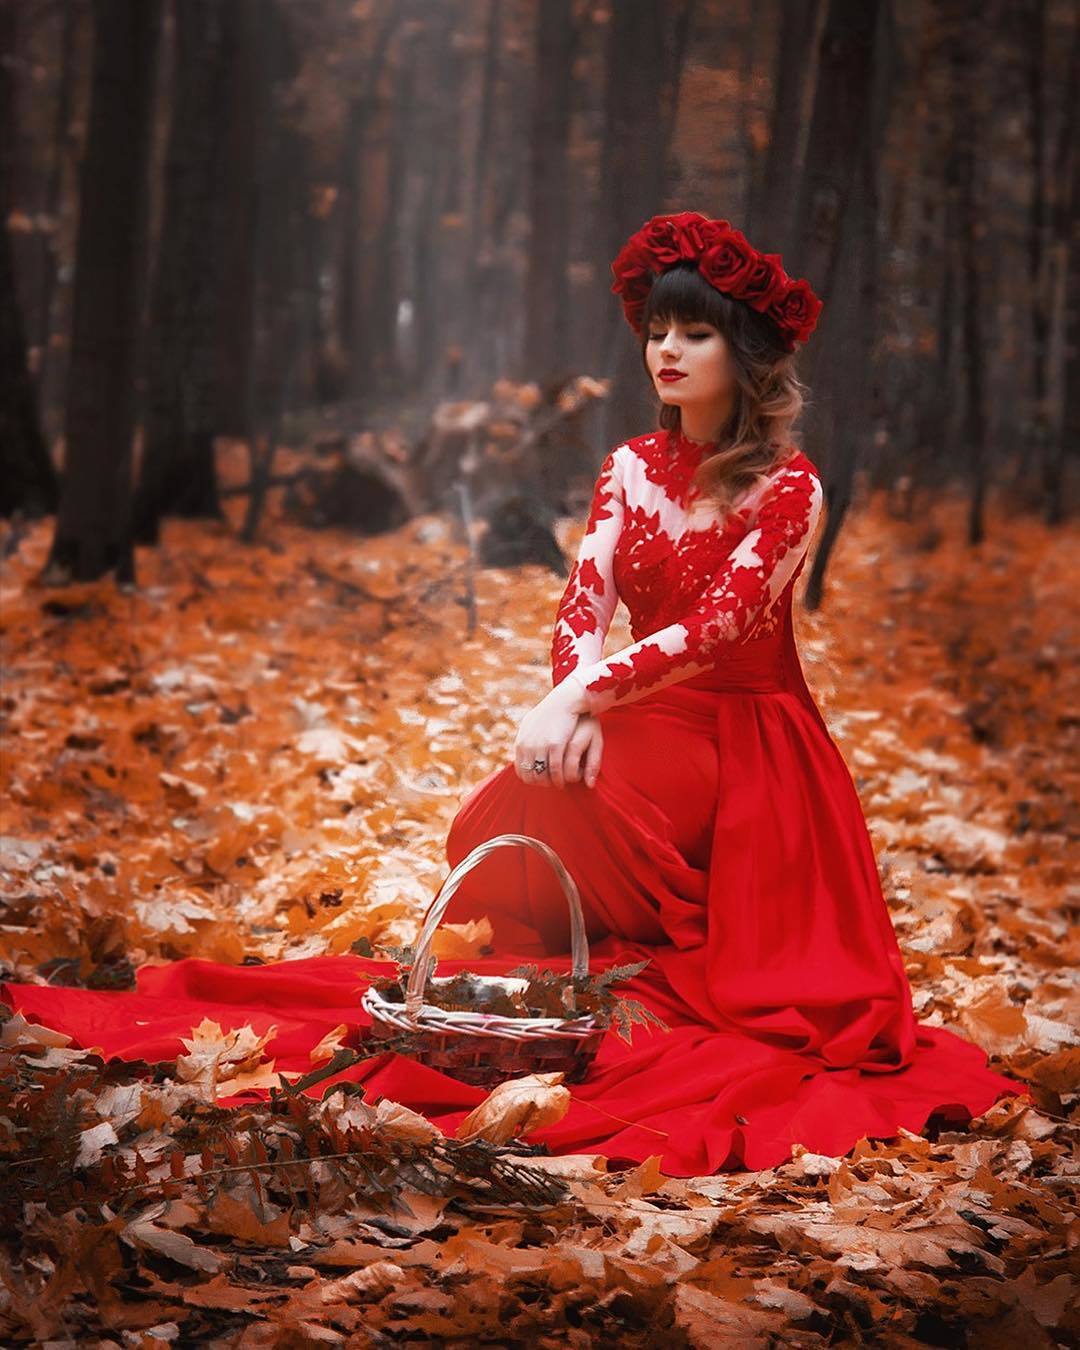 Осенняя фотосессия в Красном платье